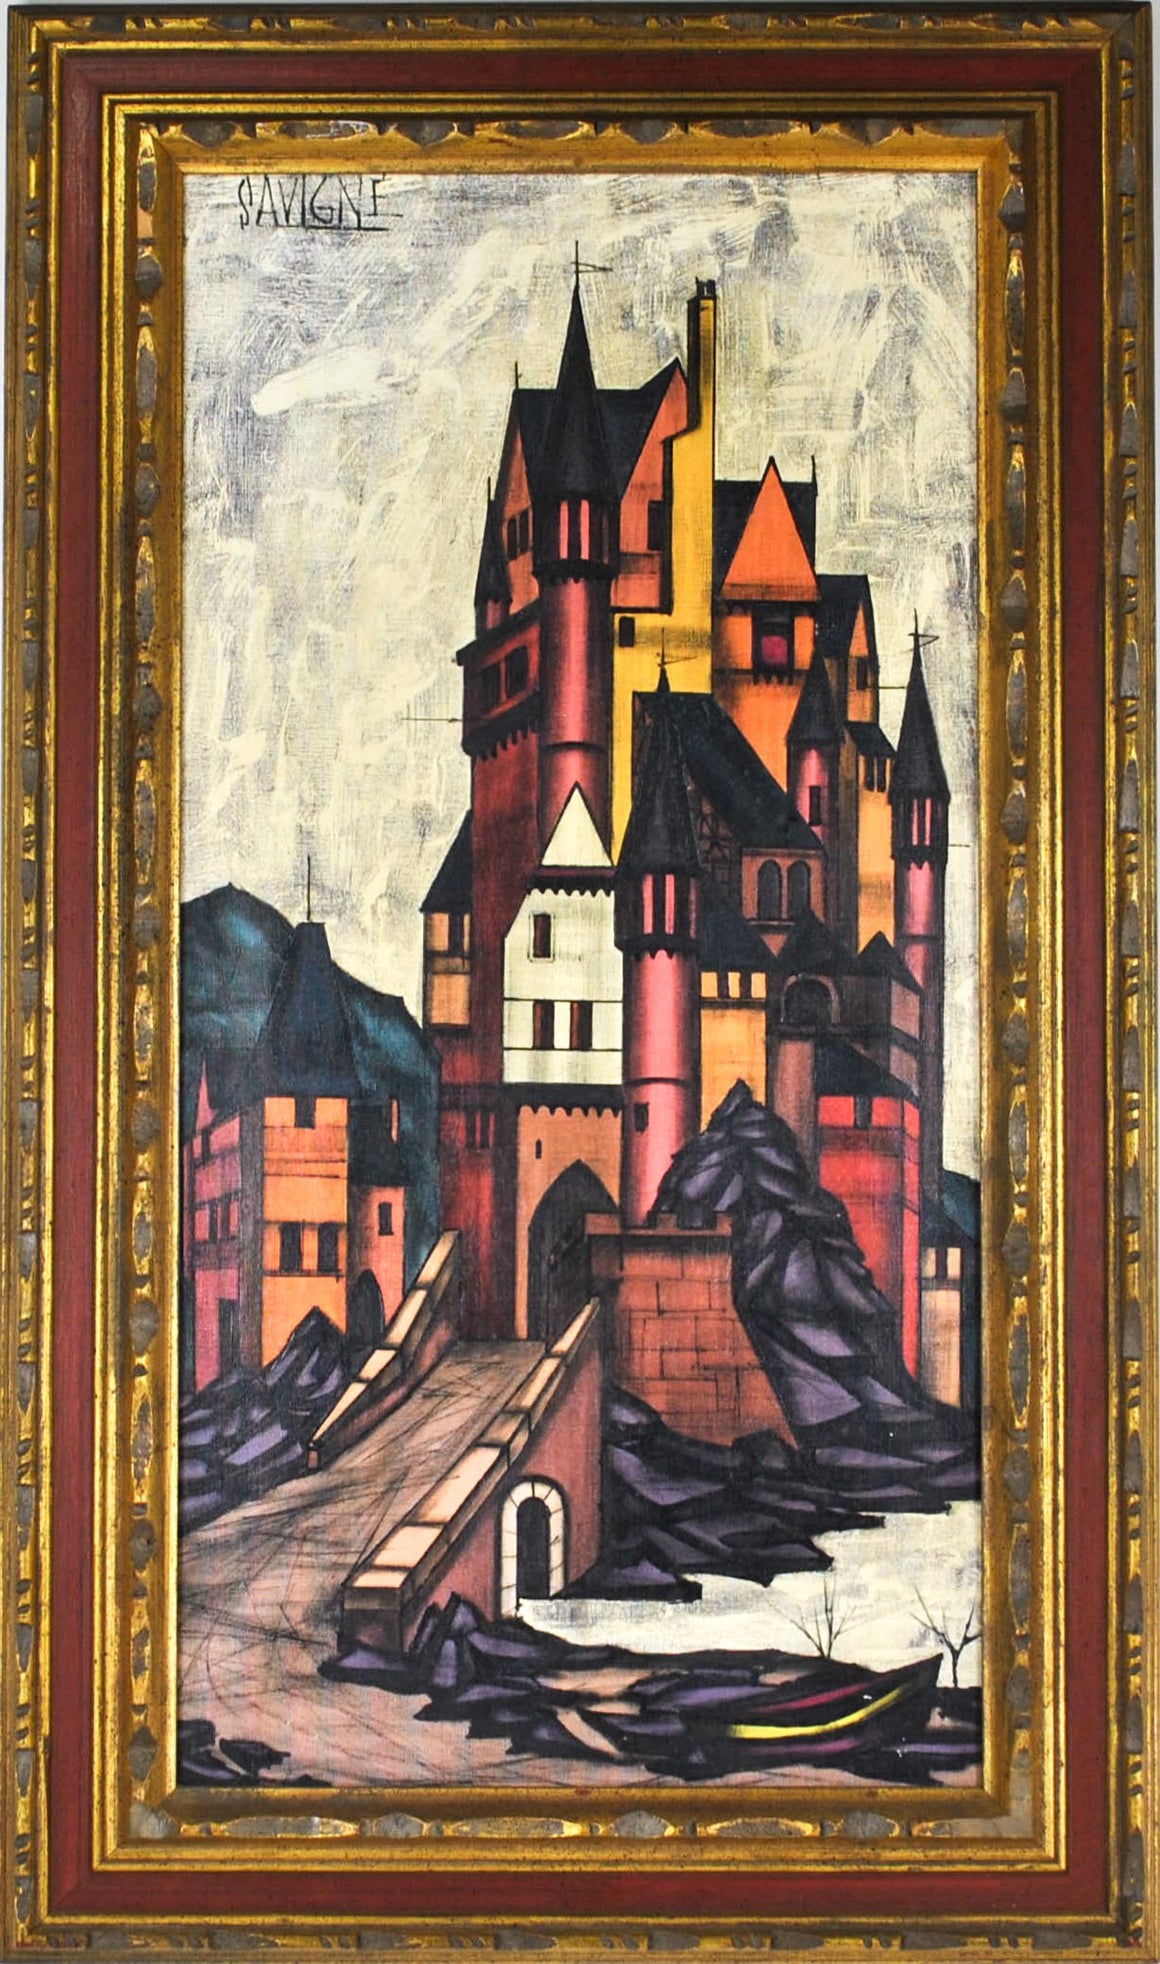 D.H. Savigne - Castle - Oil Painting - c 1960